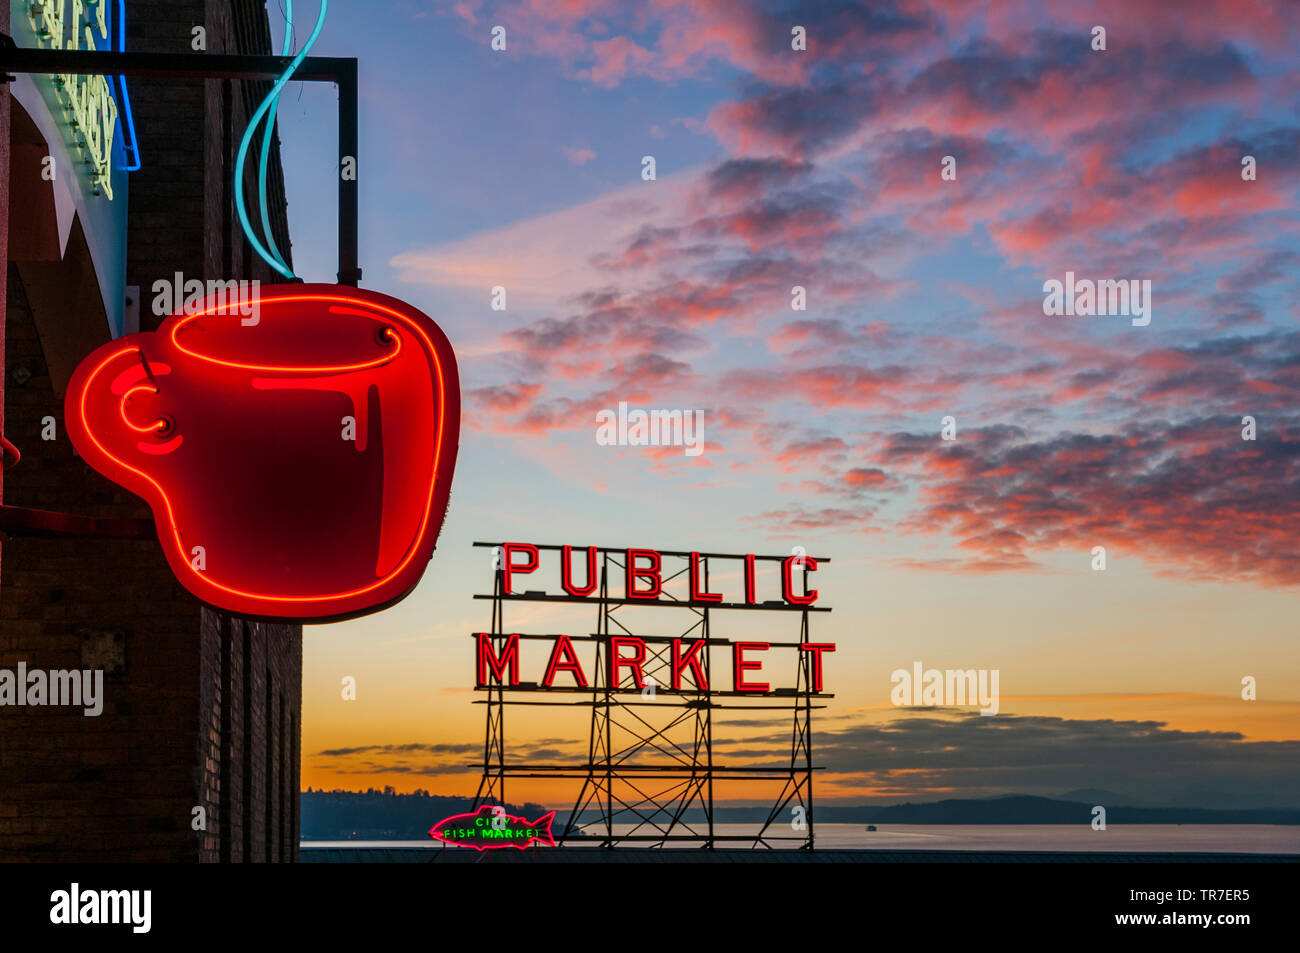 Tazza di caffè insegna al neon con il Pike Market insegna al neon in background al tramonto, Seattle, Washington, Stati Uniti d'America Foto Stock